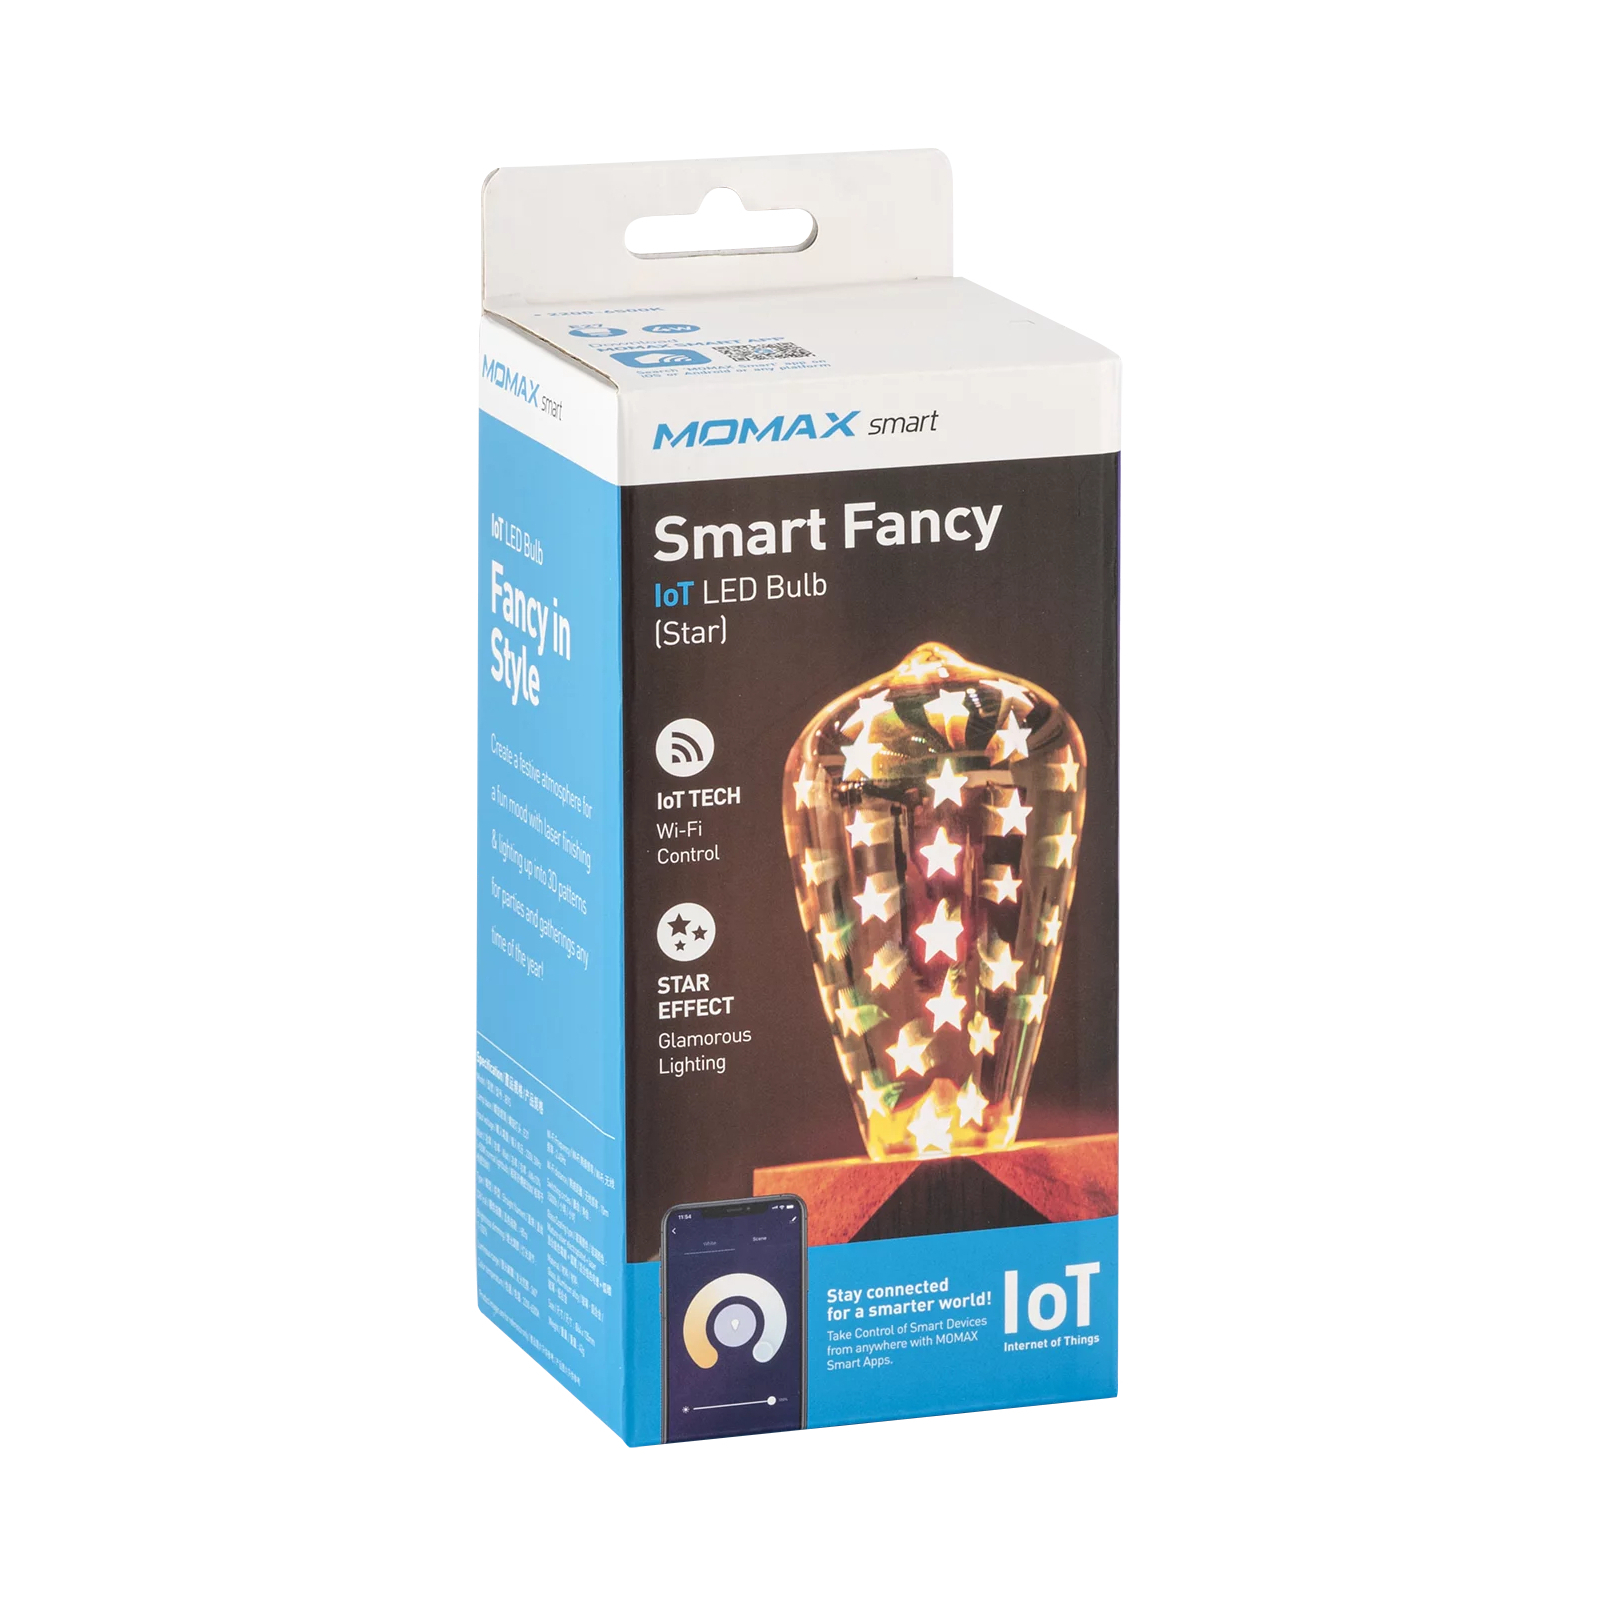 Умная лампочка Momax SMART Fancy IoT LED Bulb - Star (IB7S) изображение 2